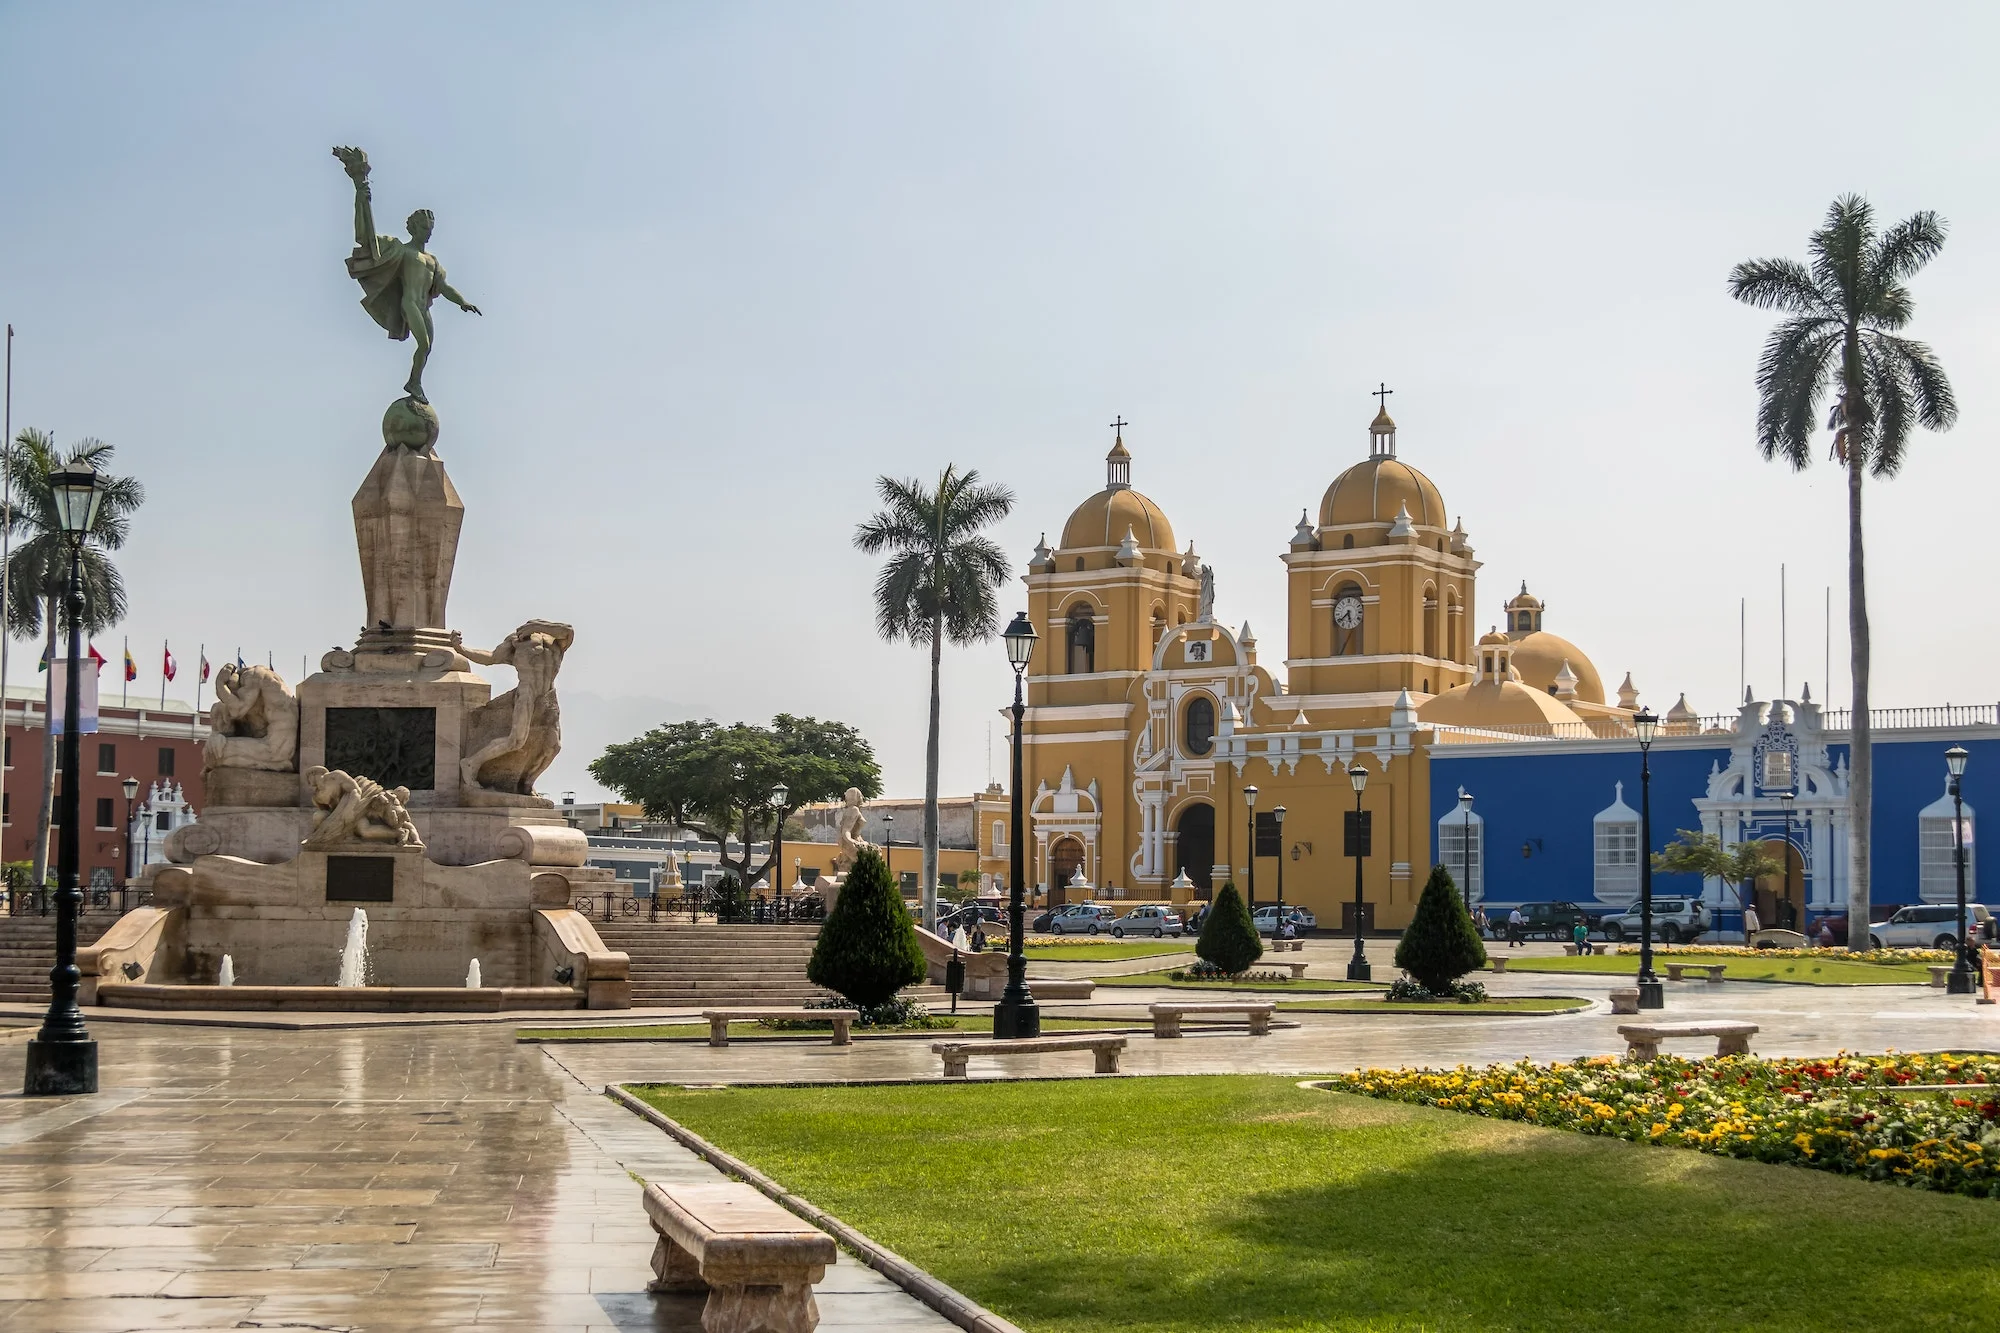 Main Square (Plaza de Armas) and Cathedral - Trujillo, Peru